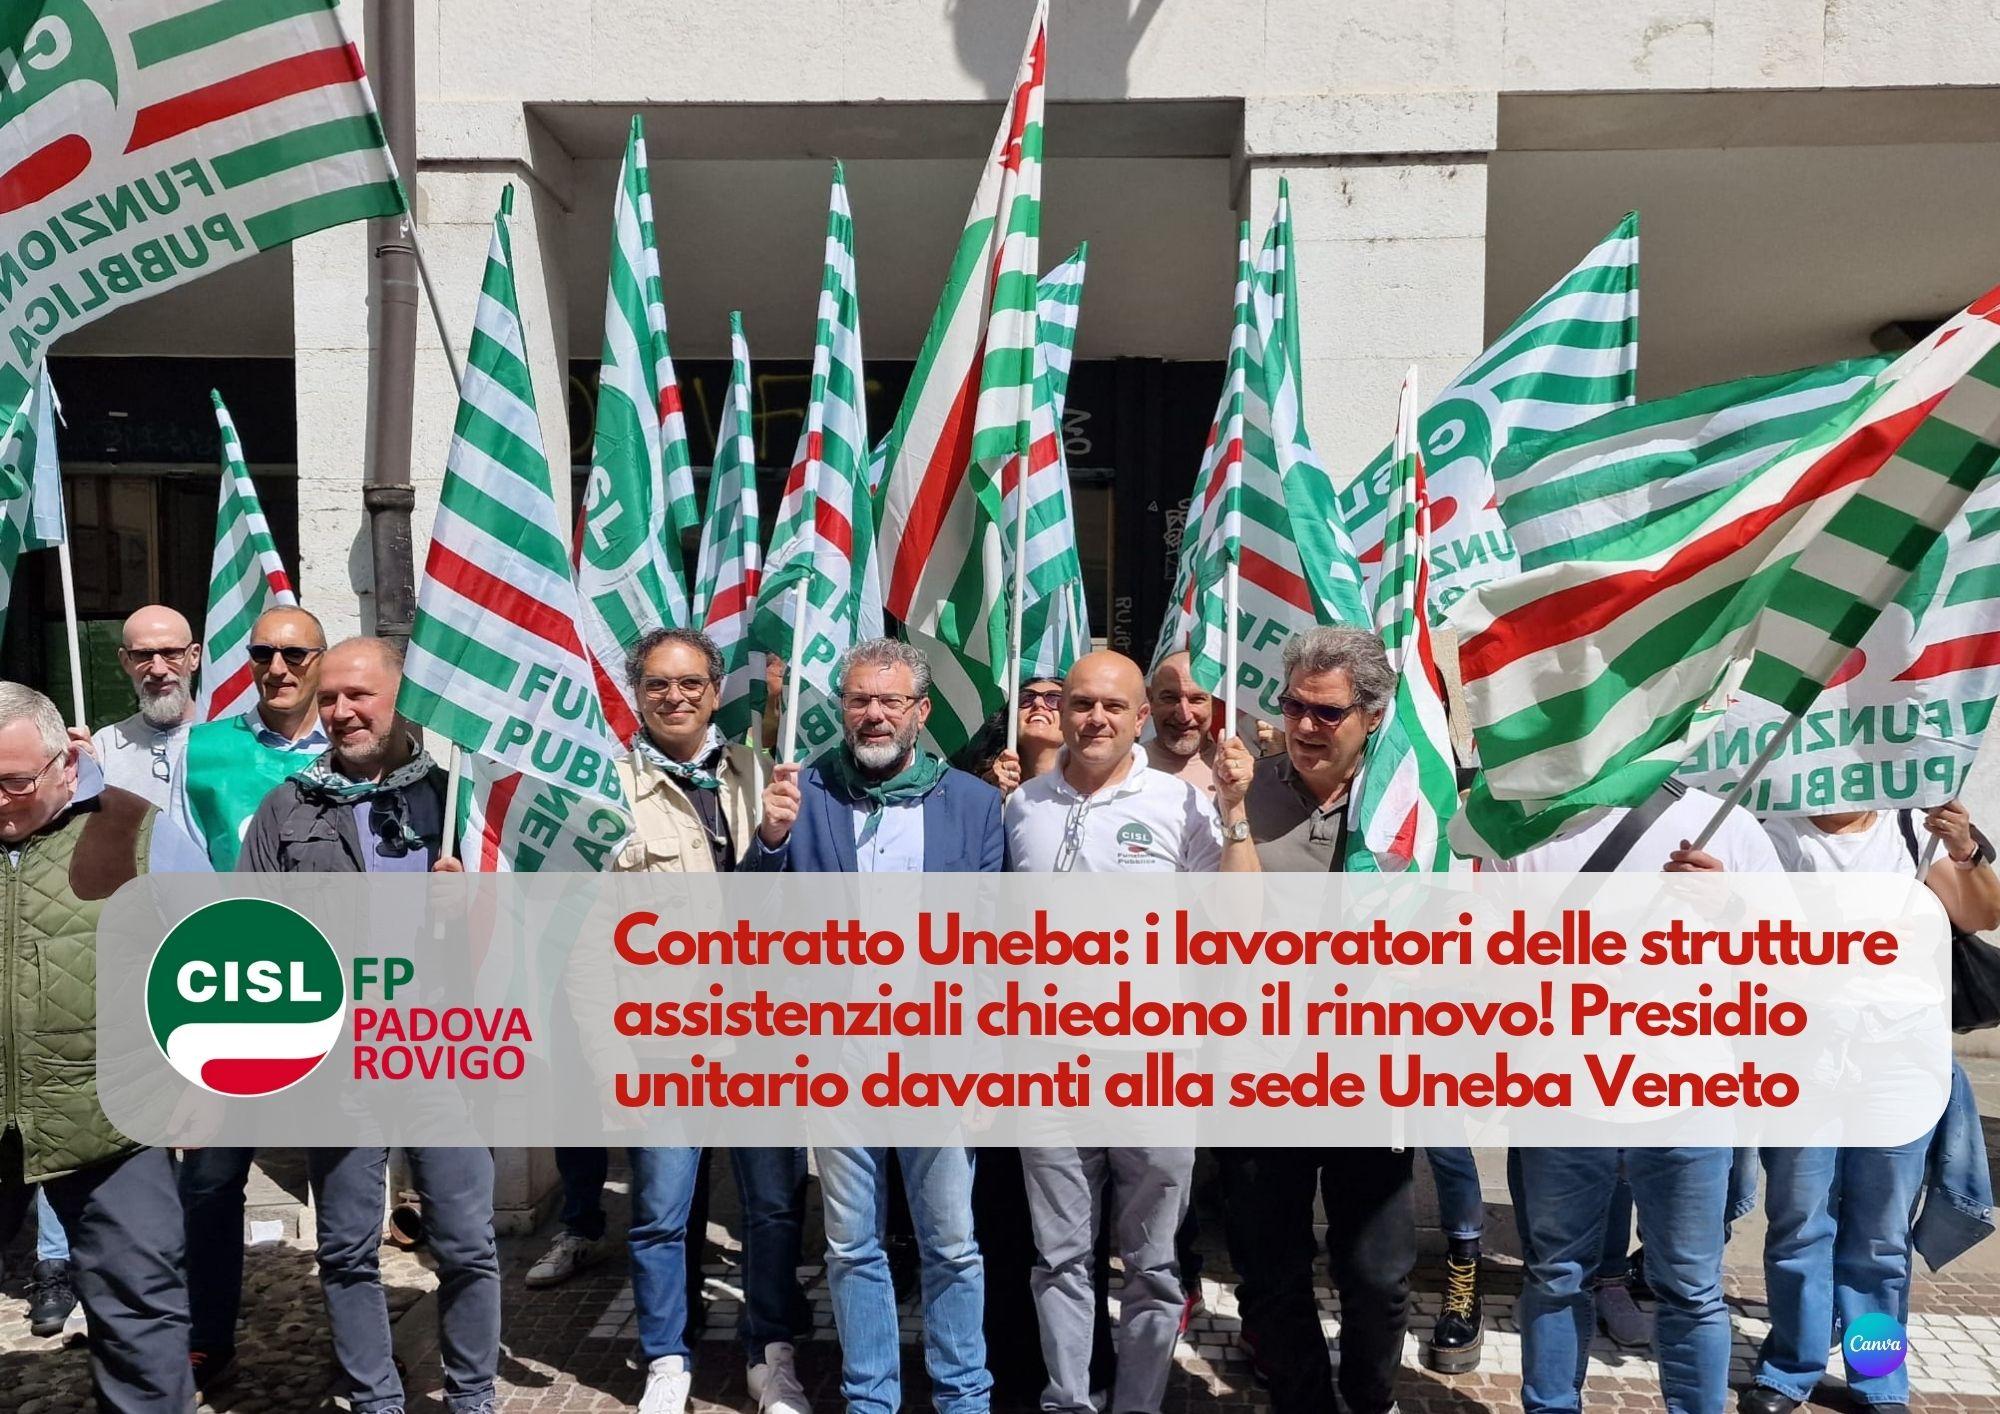 CISL FP Padova Rovigo. Contratto Uneba: i lavoratori delle strutture assistenziali chiedono il rinnovo!